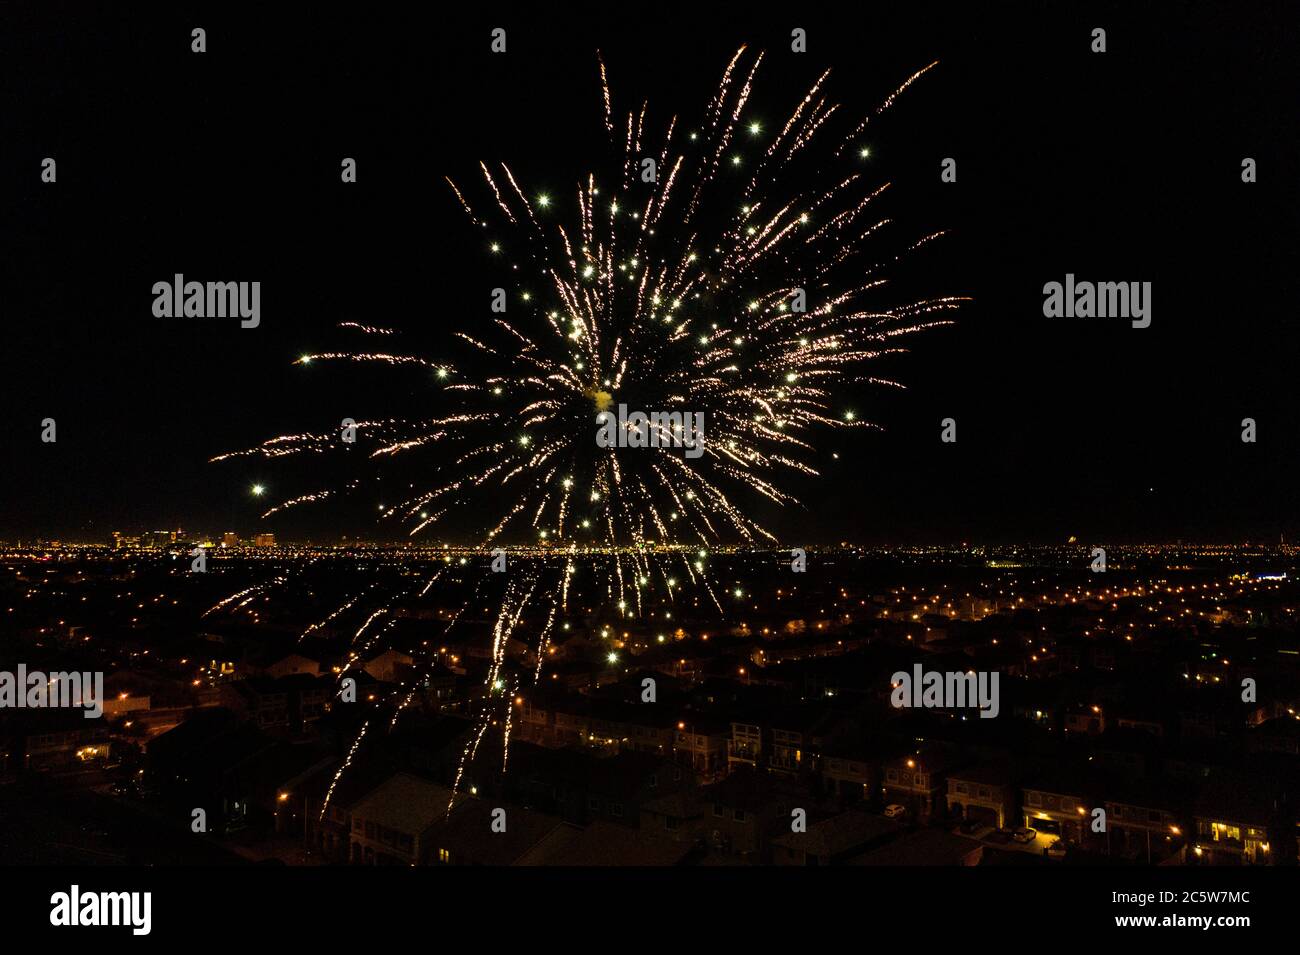 Am 4. Juli, dem amerikanischen Unabhängigkeitstag, explodieren wunderschöne Feuerwerke am Nachthimmel über der Stadt Las Vegas, Nevada. Stockfoto